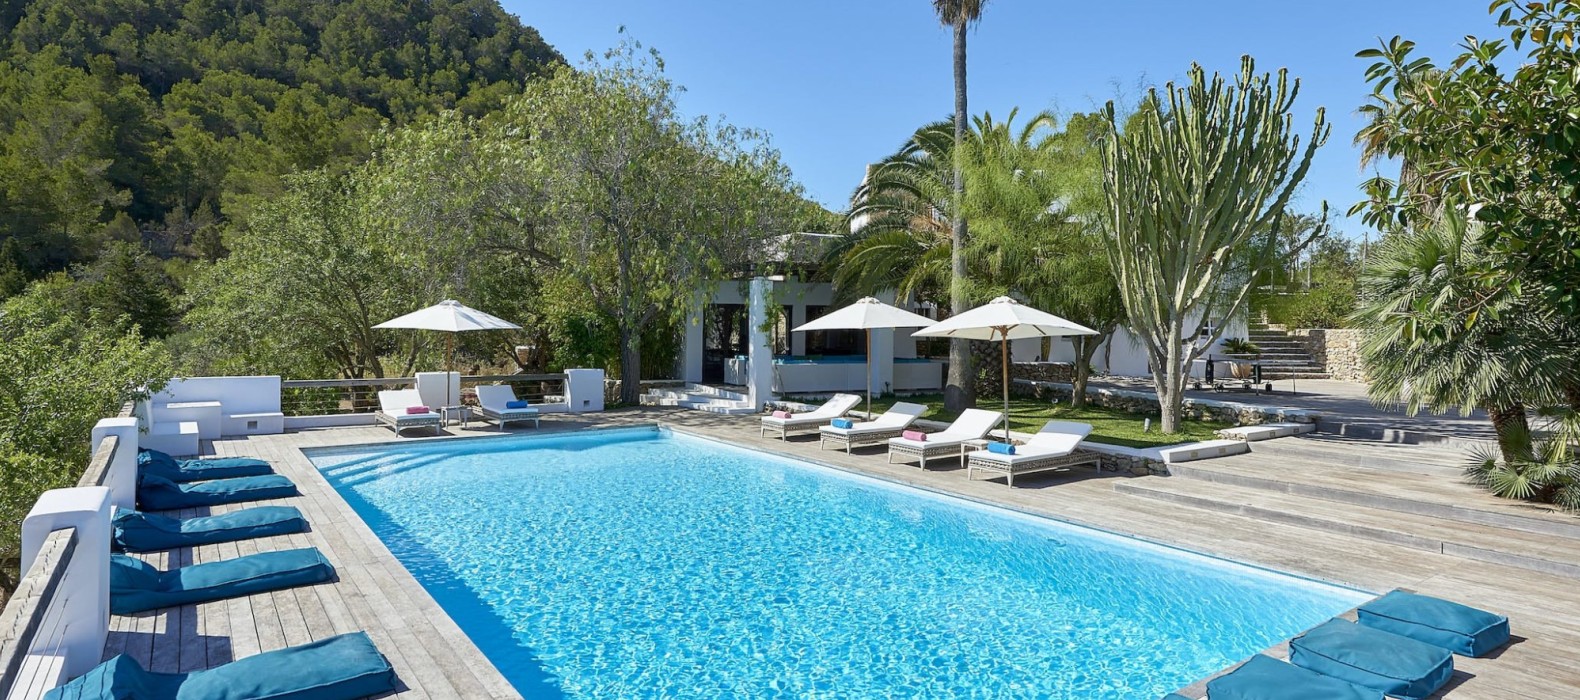 Exterior pool area of Finca Las Velas in Ibiza